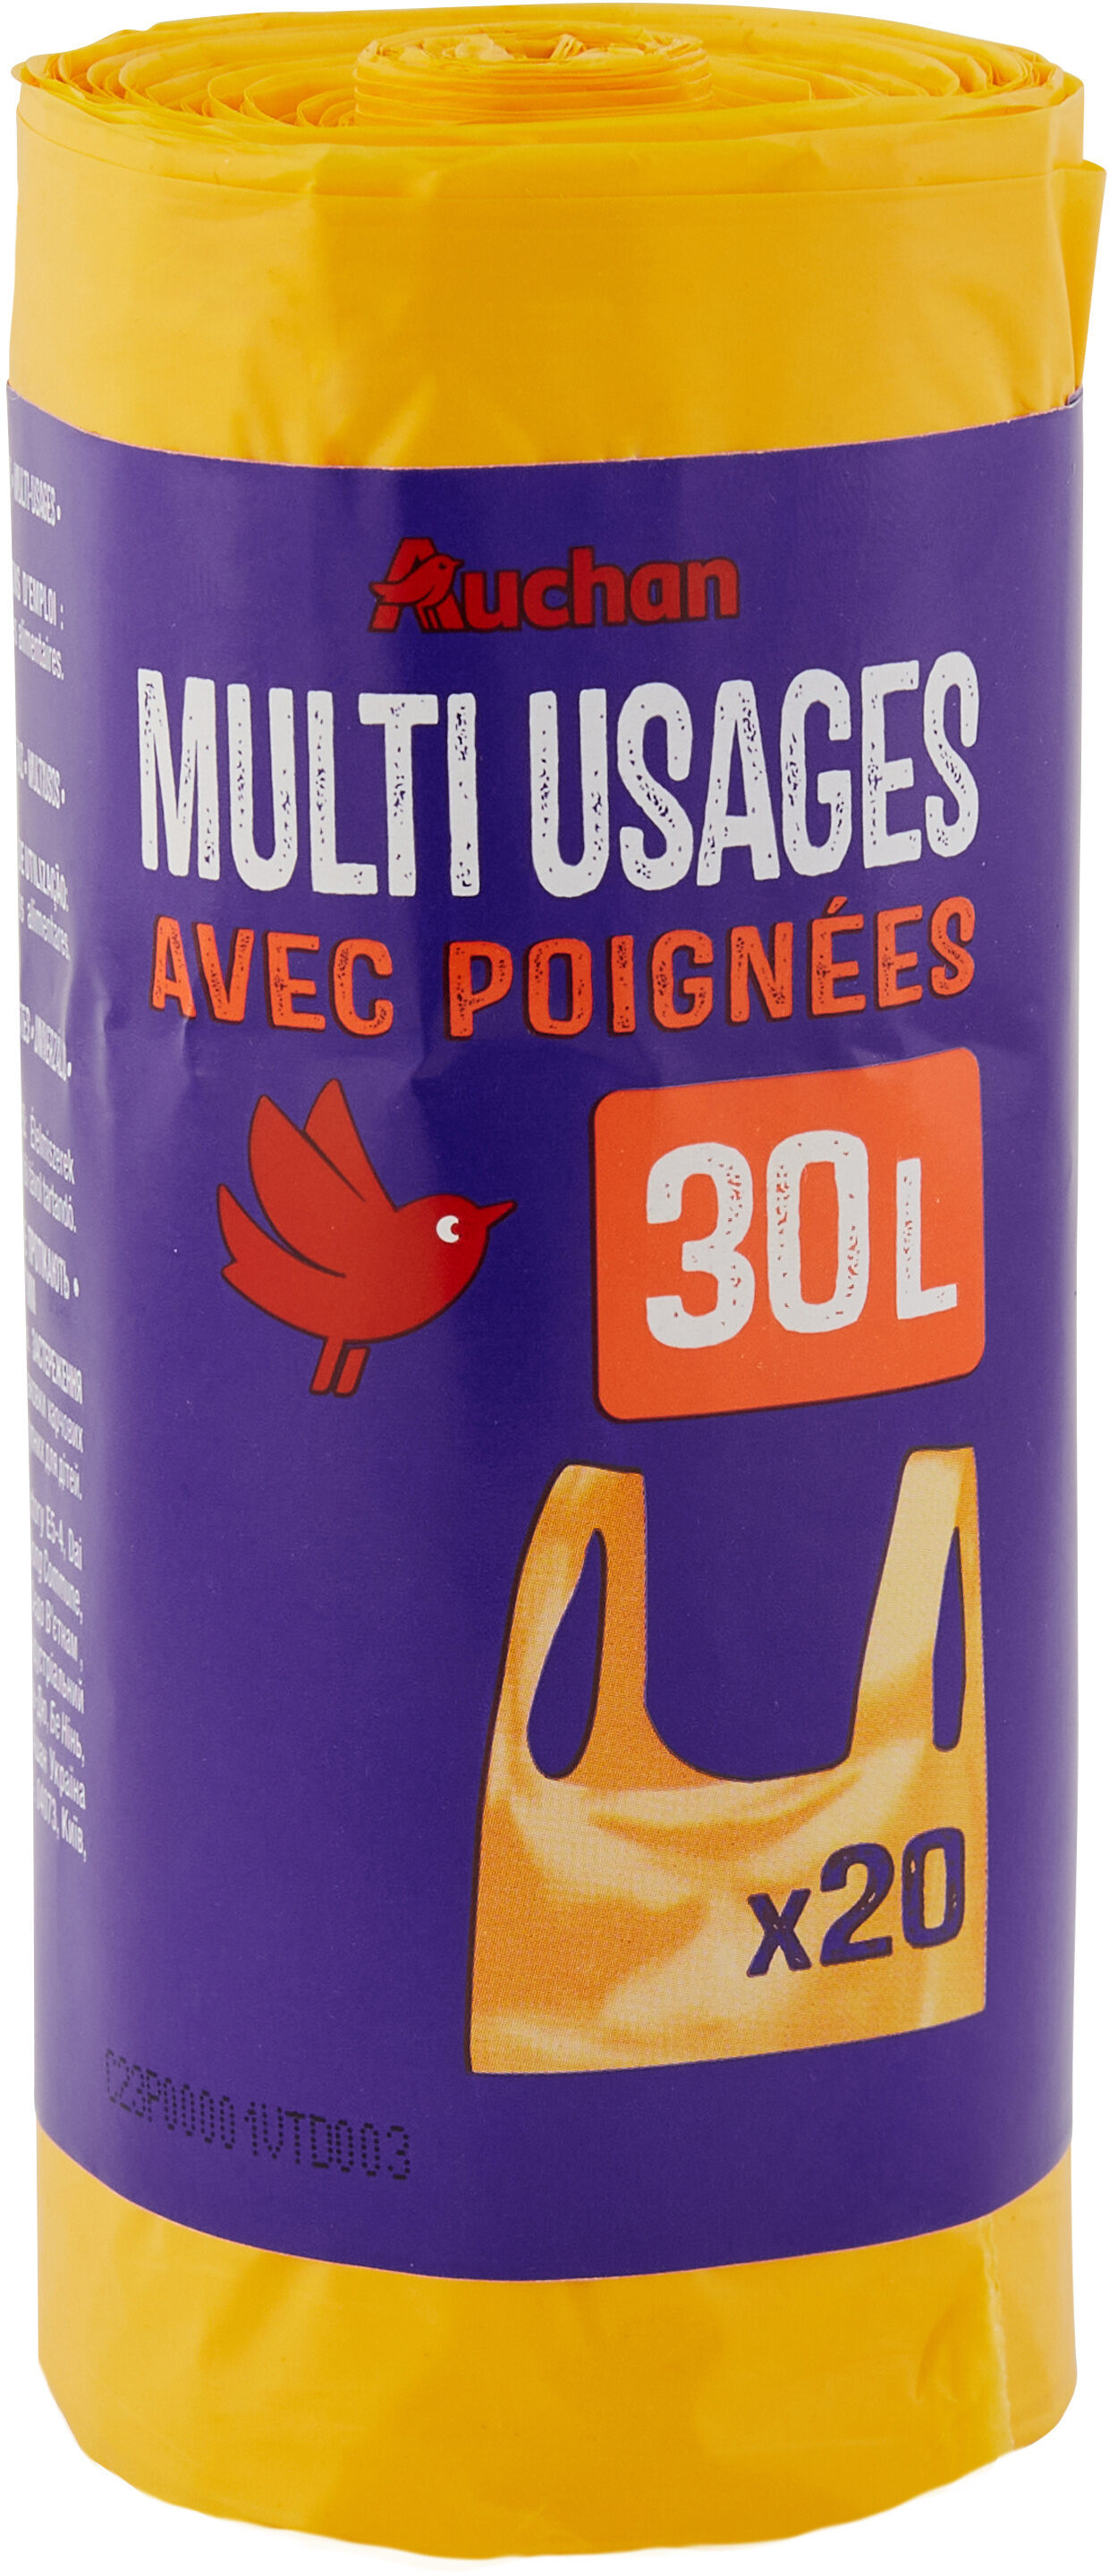 Auchan sacs multifonctions a poignee 30l 20pcs - Product - fr